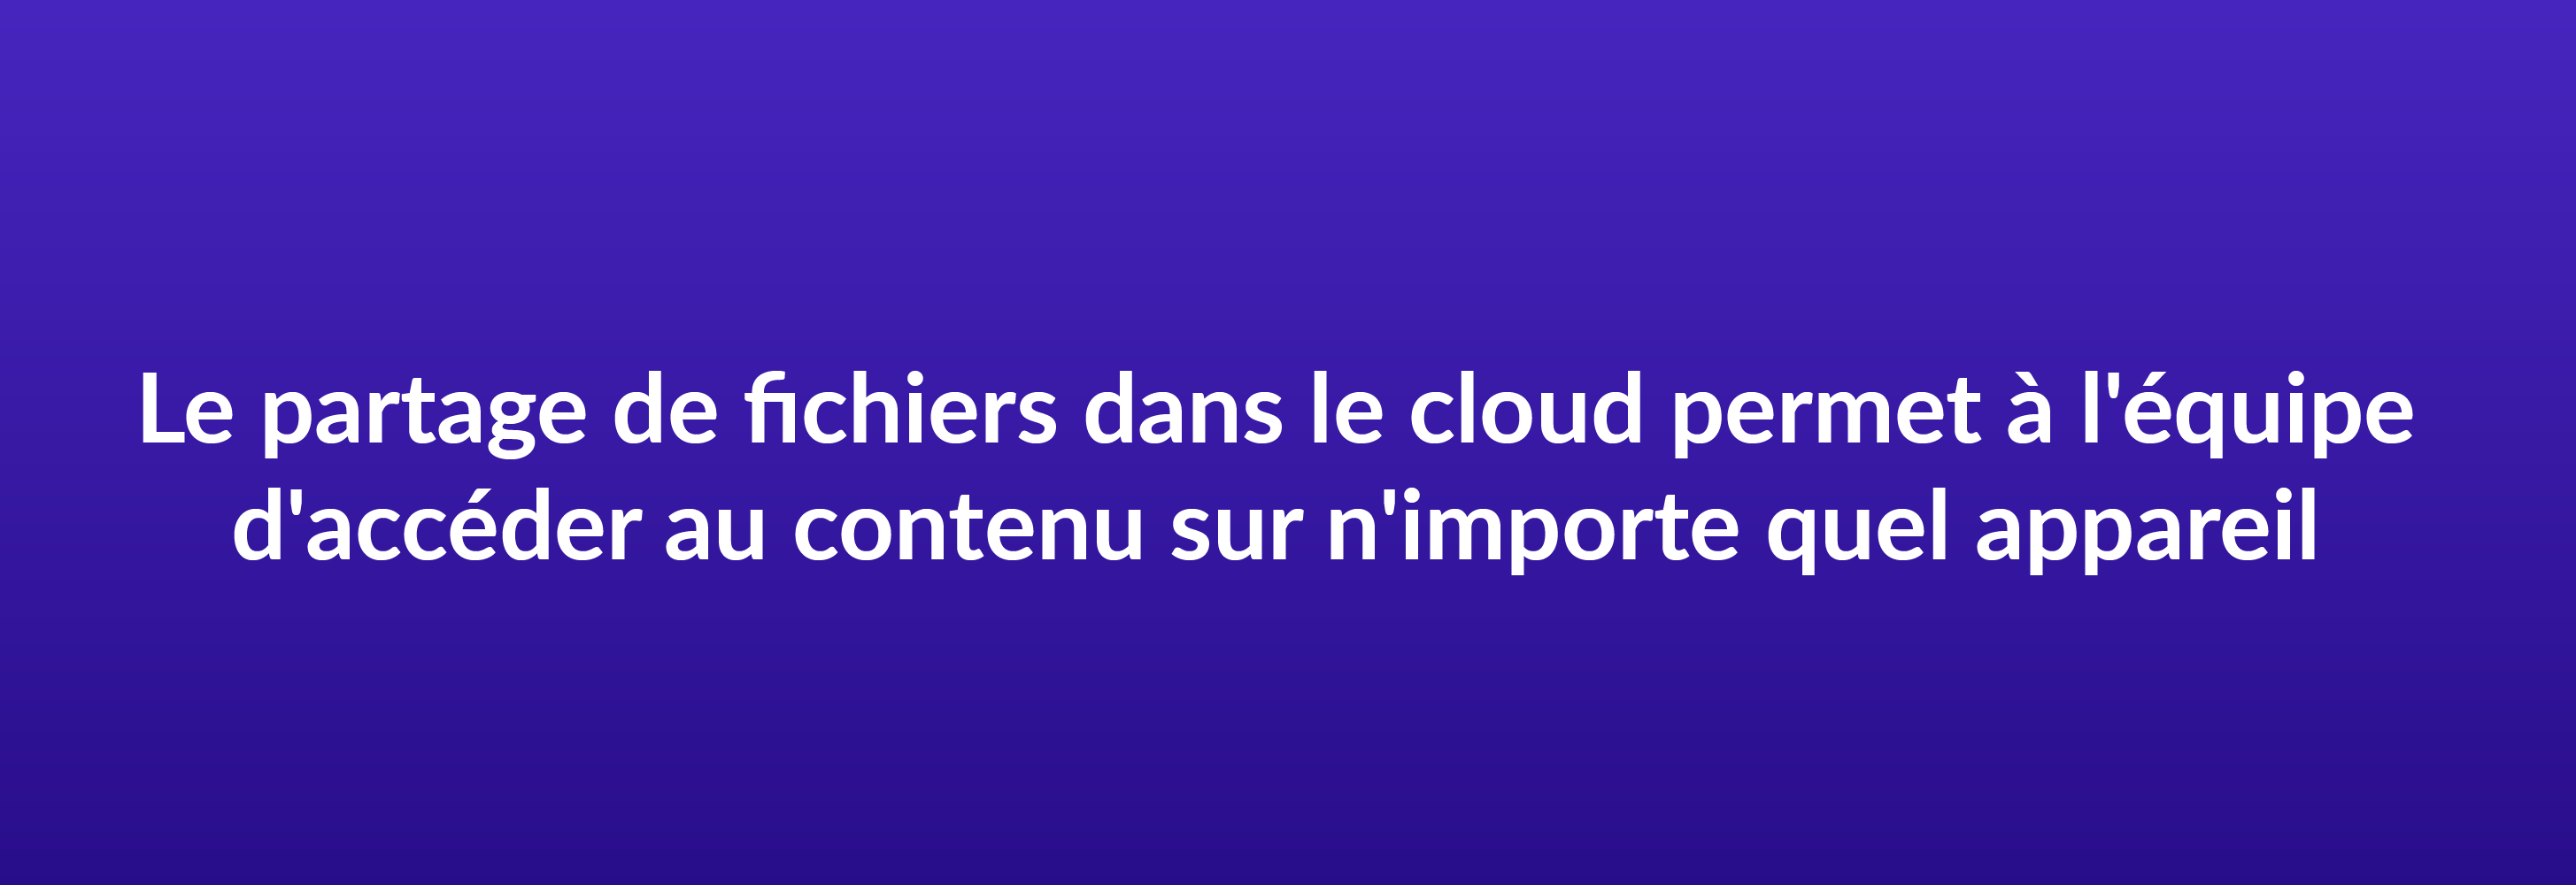 Le partage de fichiers dans le cloud permet à vos collaborateurs d'accéder au contenu de l'entreprise sur n'importe quel appareil connecté à Internet